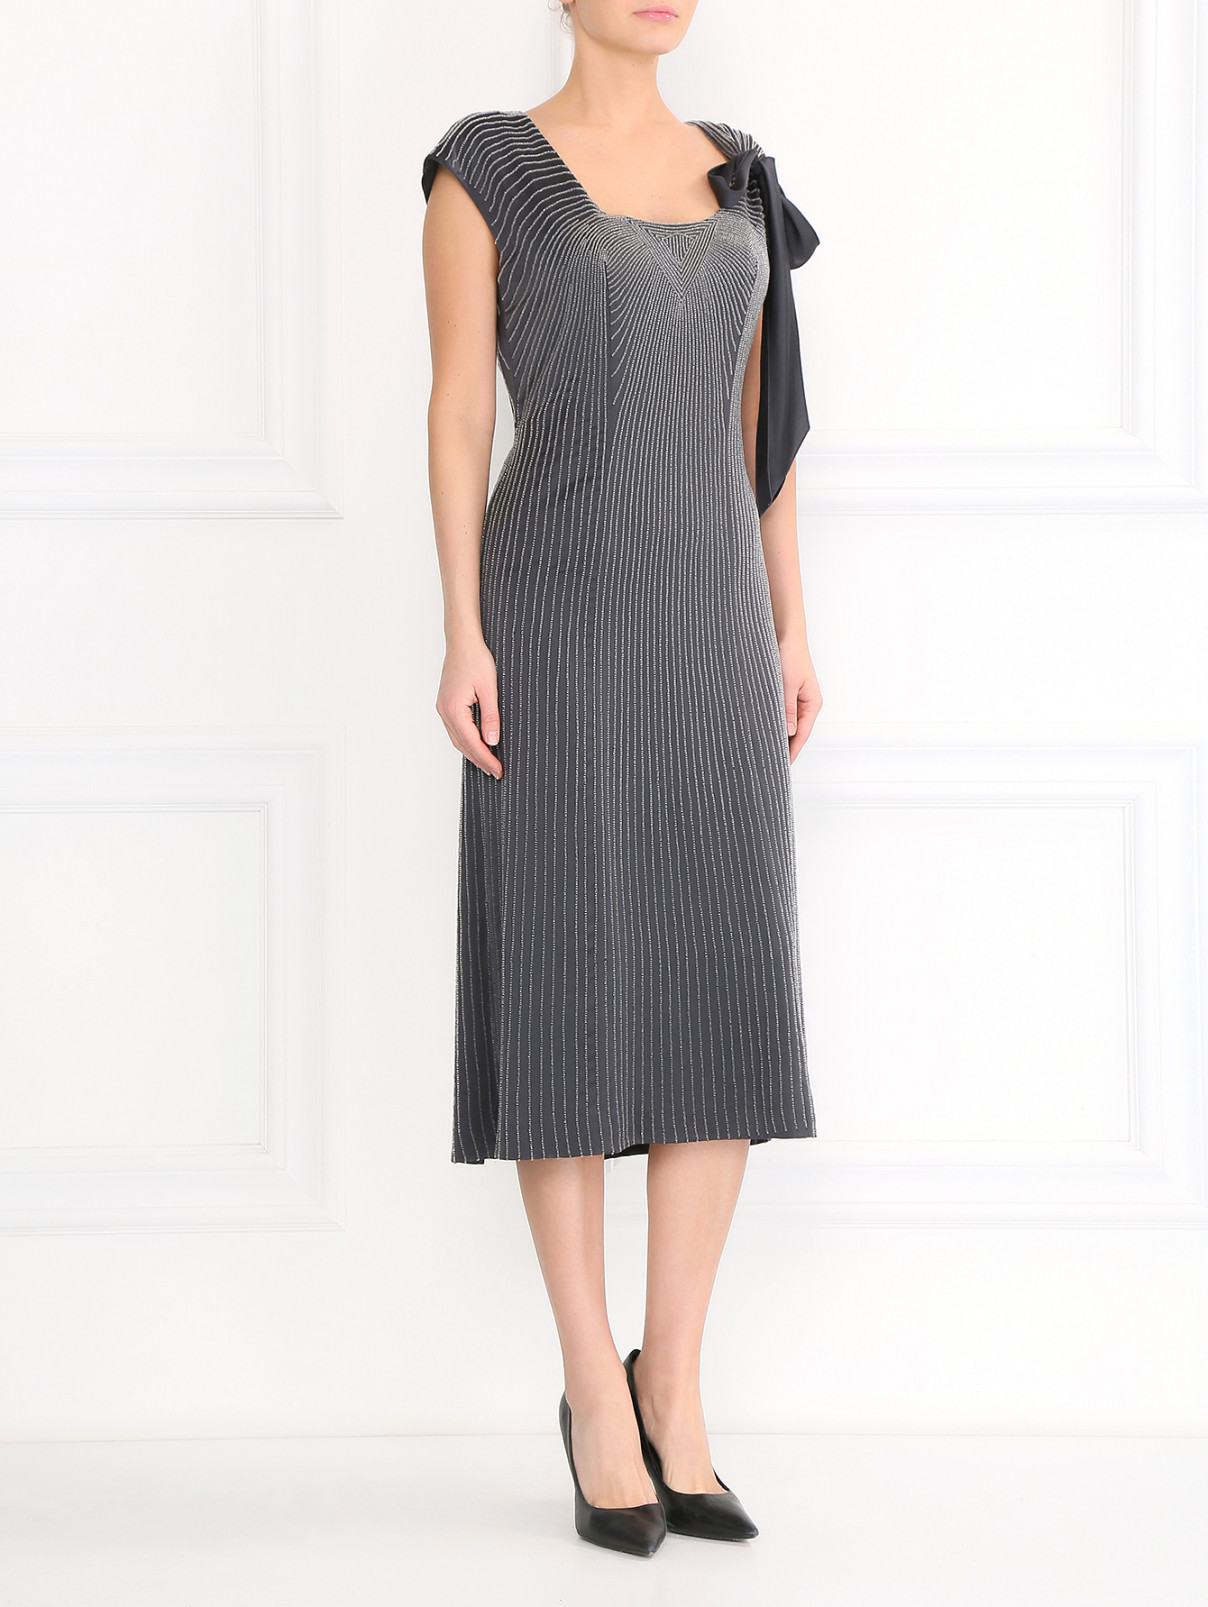 Платье-футляр из шелка расшитое бисером Alberta Ferretti  –  Модель Общий вид  – Цвет:  Серый